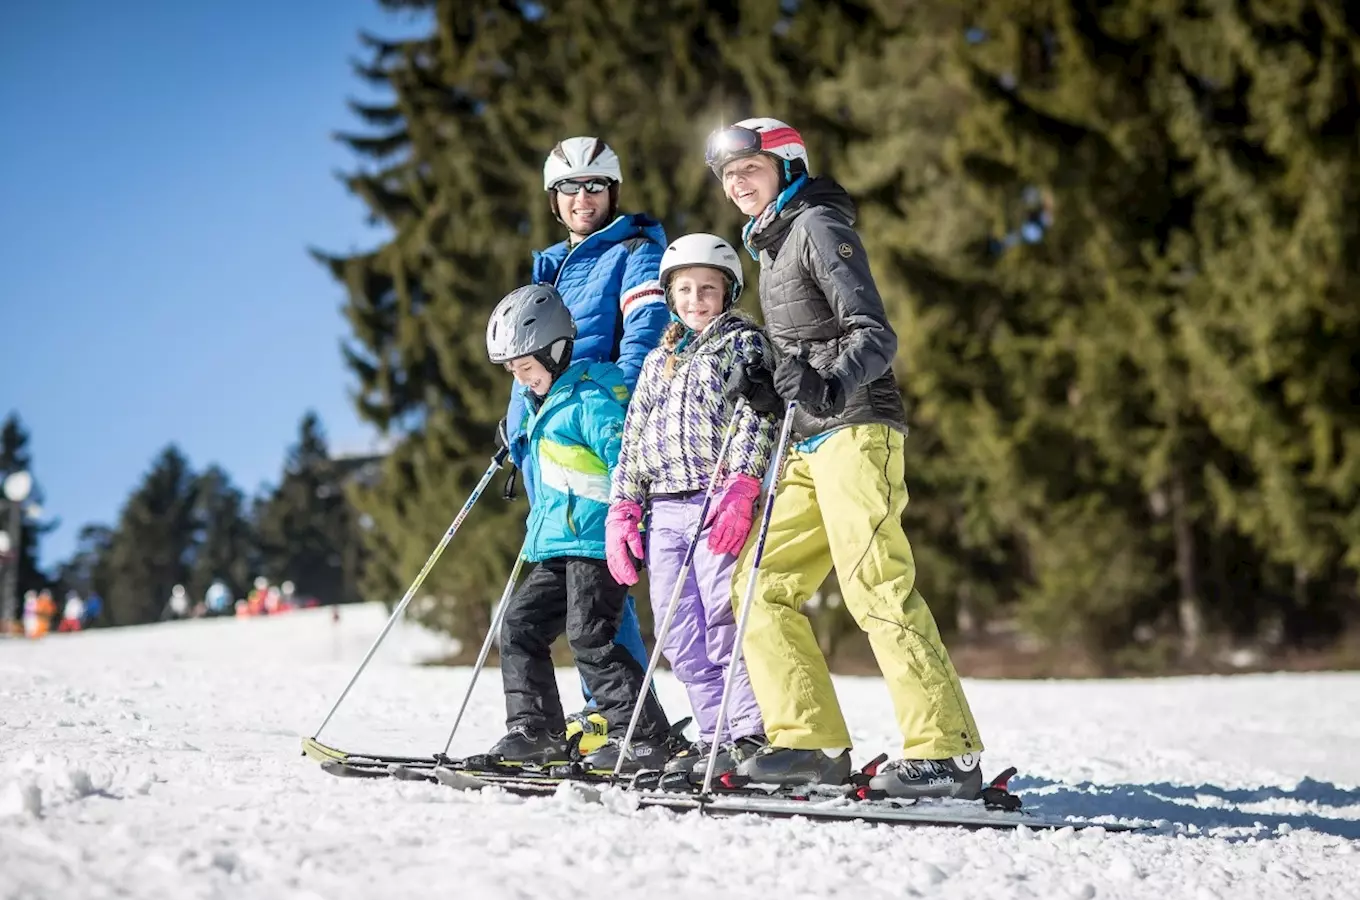 Skiareál Lipno zahajuje novou sezónu! A lyžuje se jen za 480 Kč